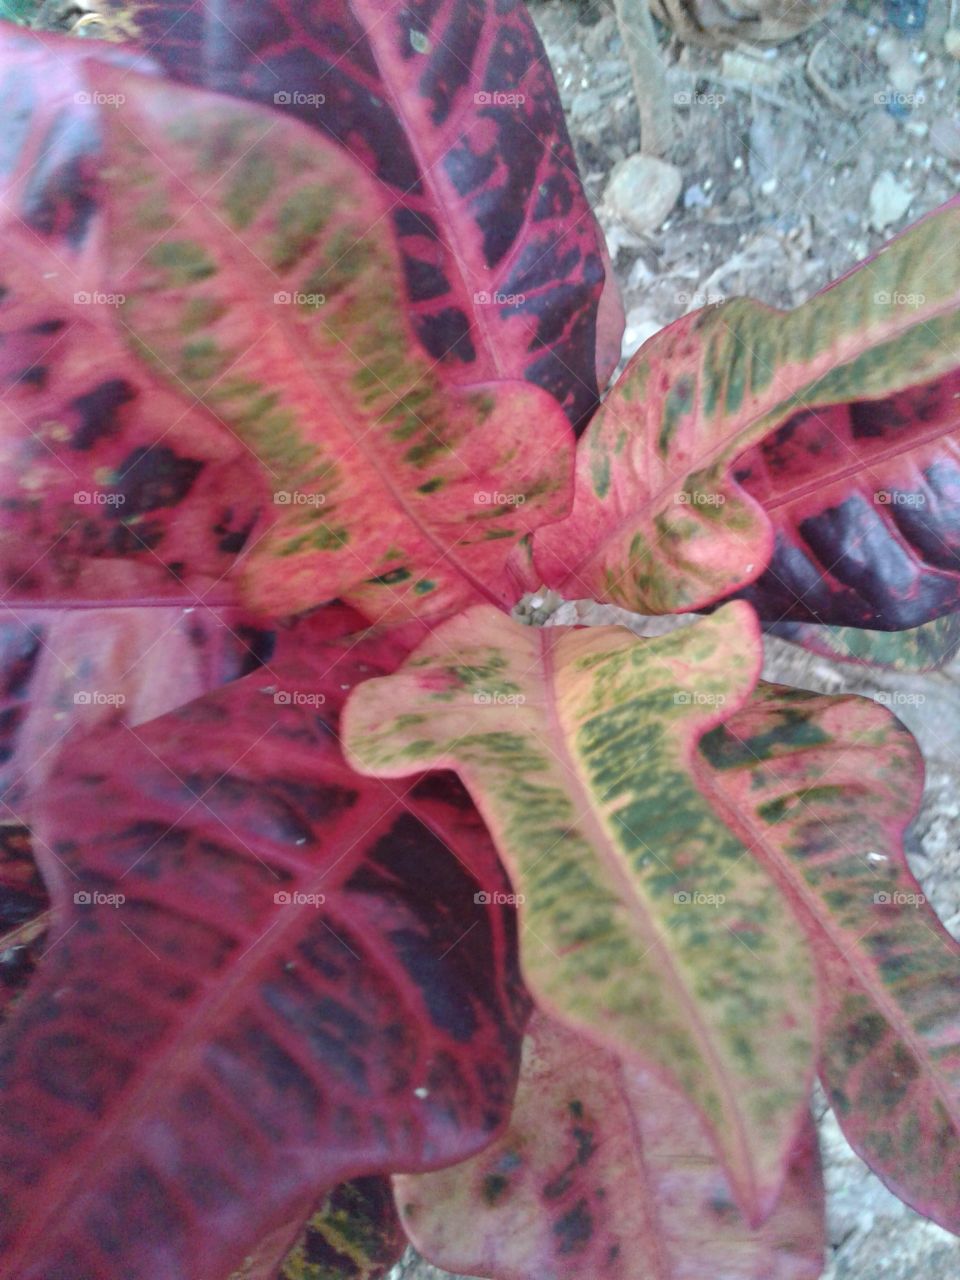 Croton species